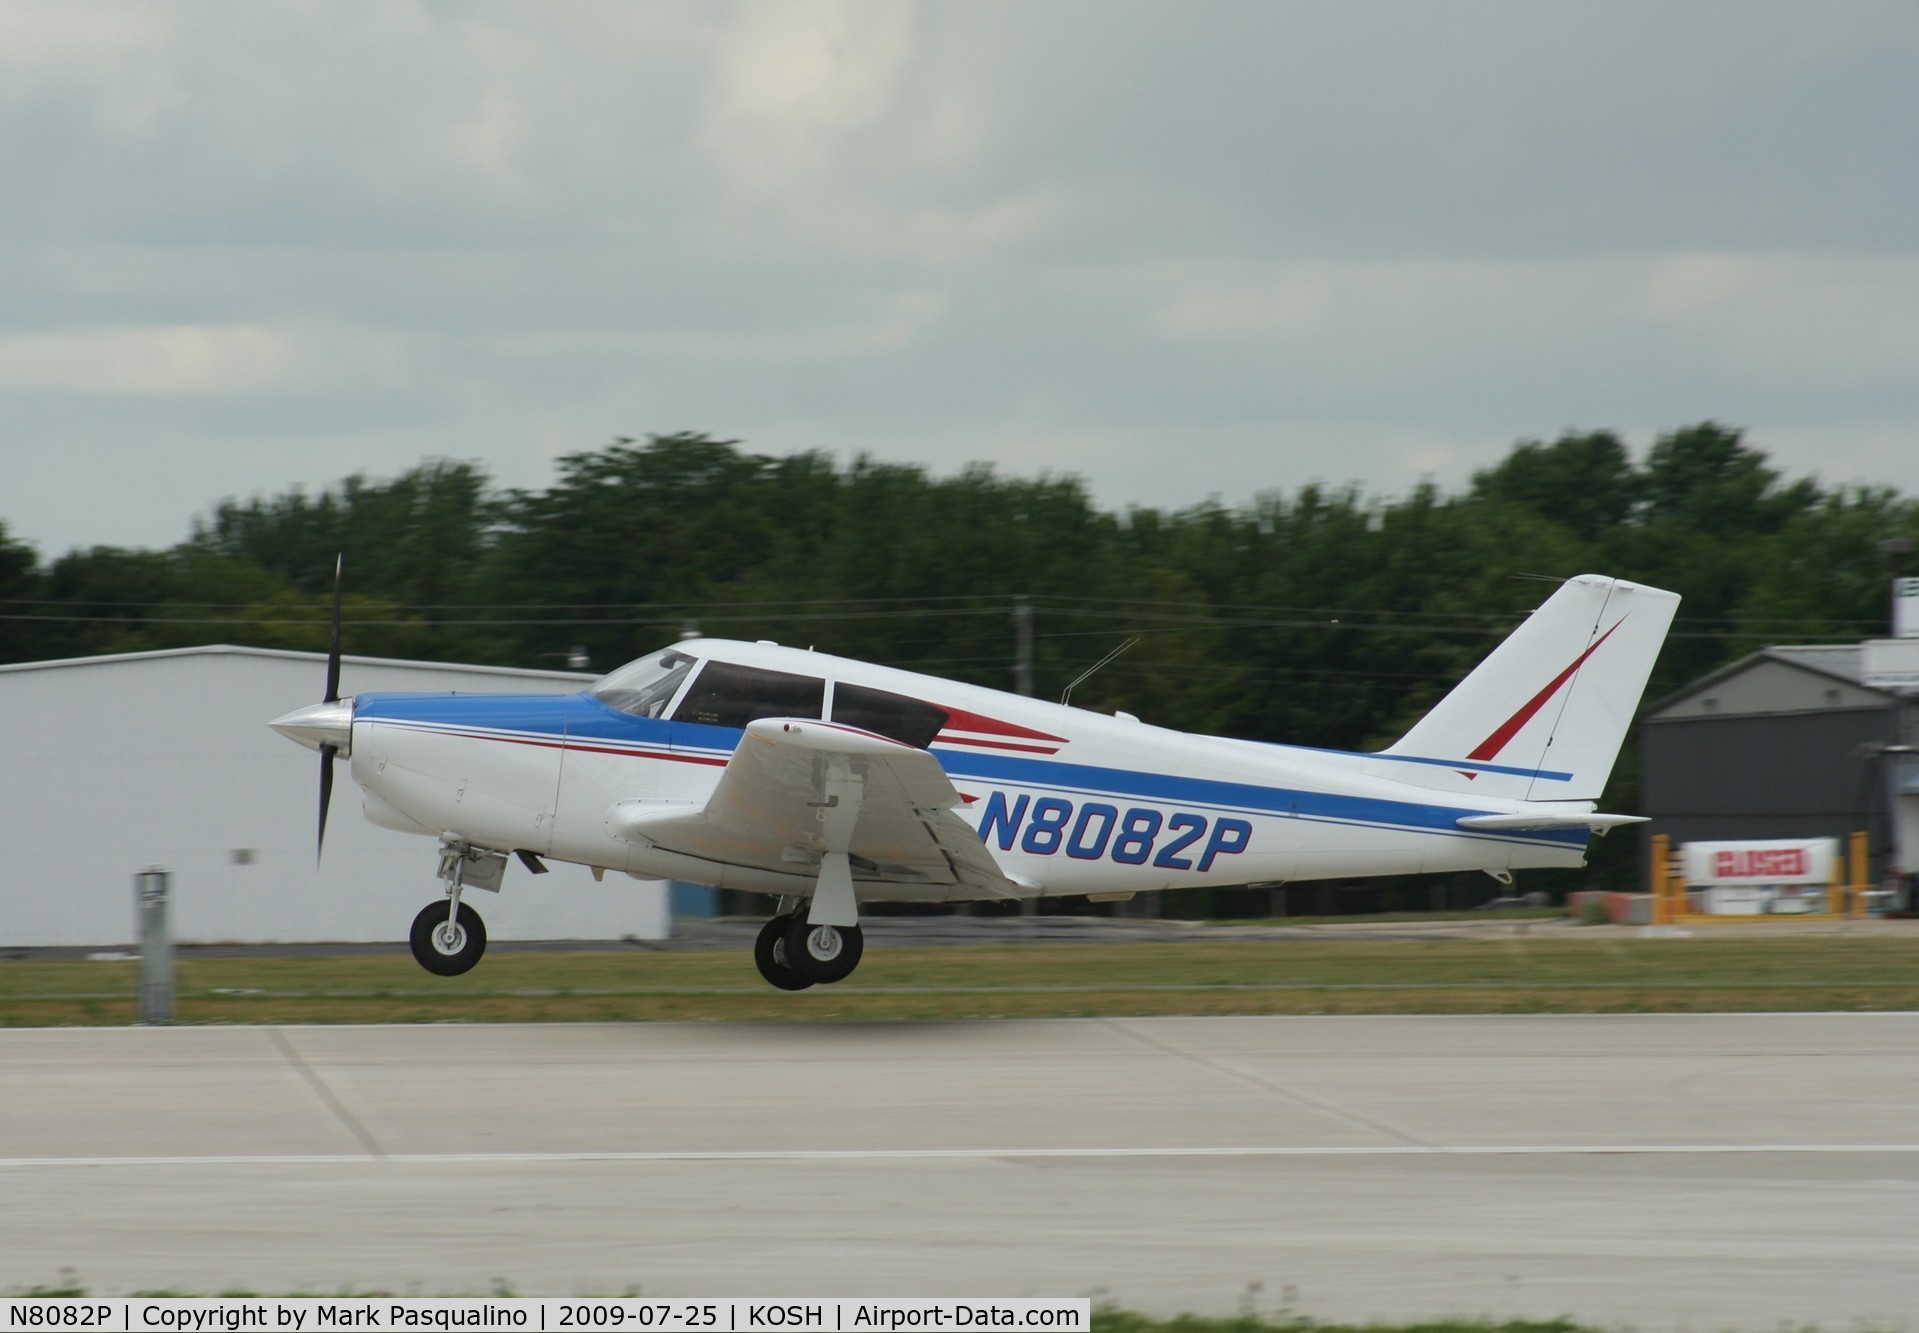 N8082P, 1962 Piper PA-24-250 Comanche C/N 24-3330, Piper PA-24-250